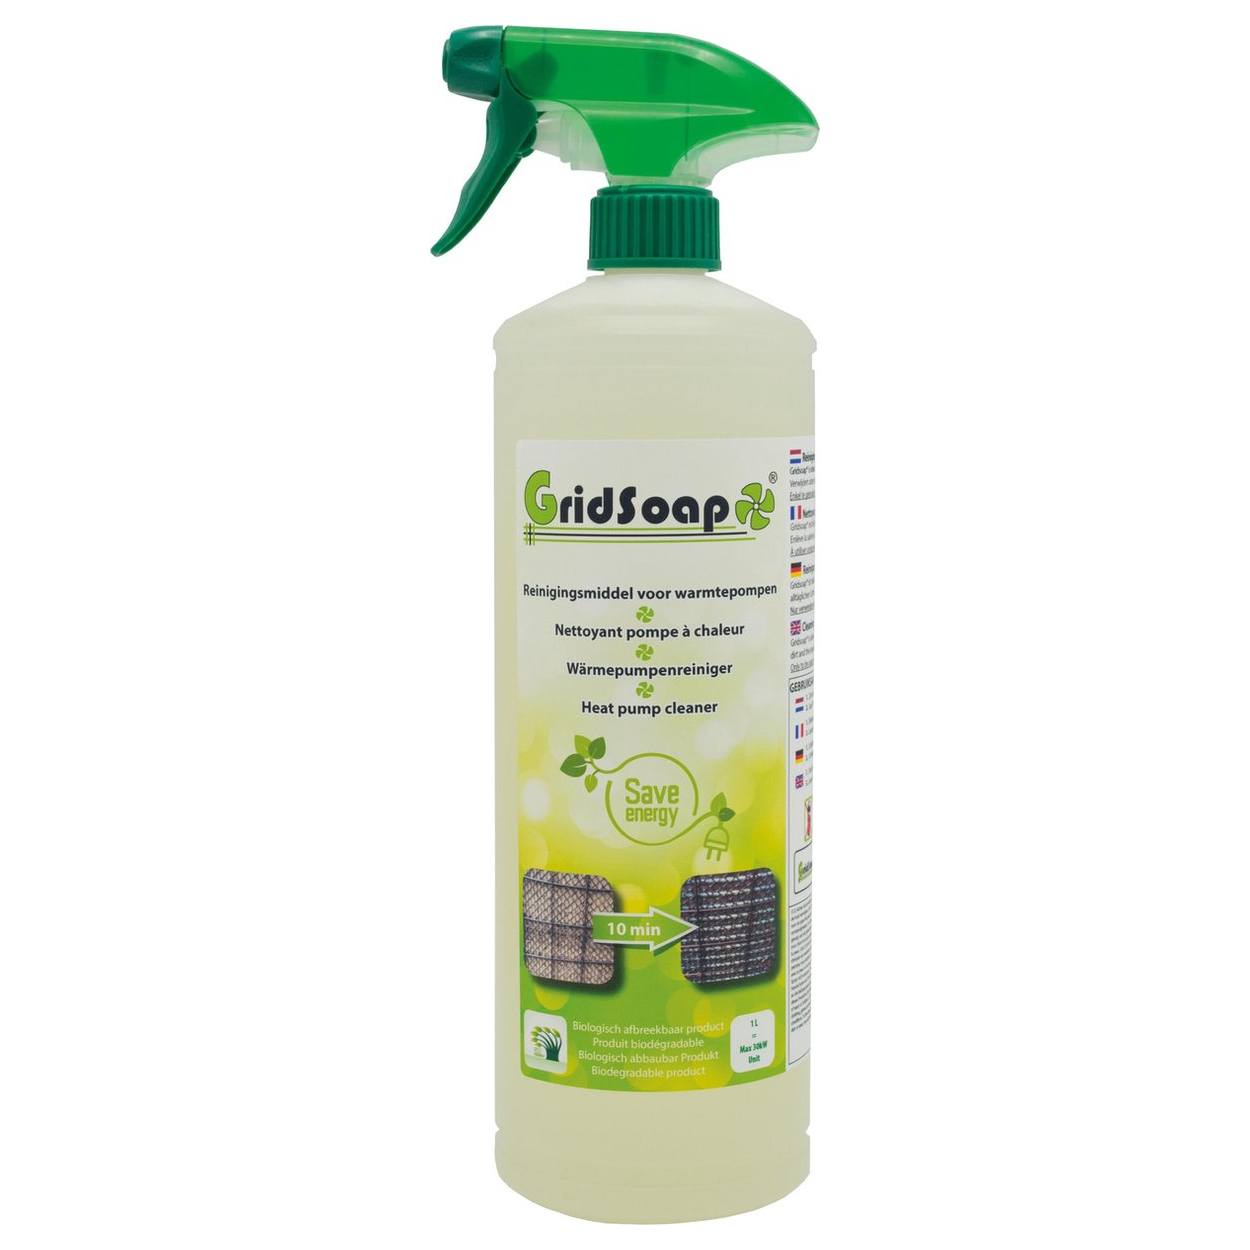 Griel Soap - Cleaning agent for heat pumps - 1L